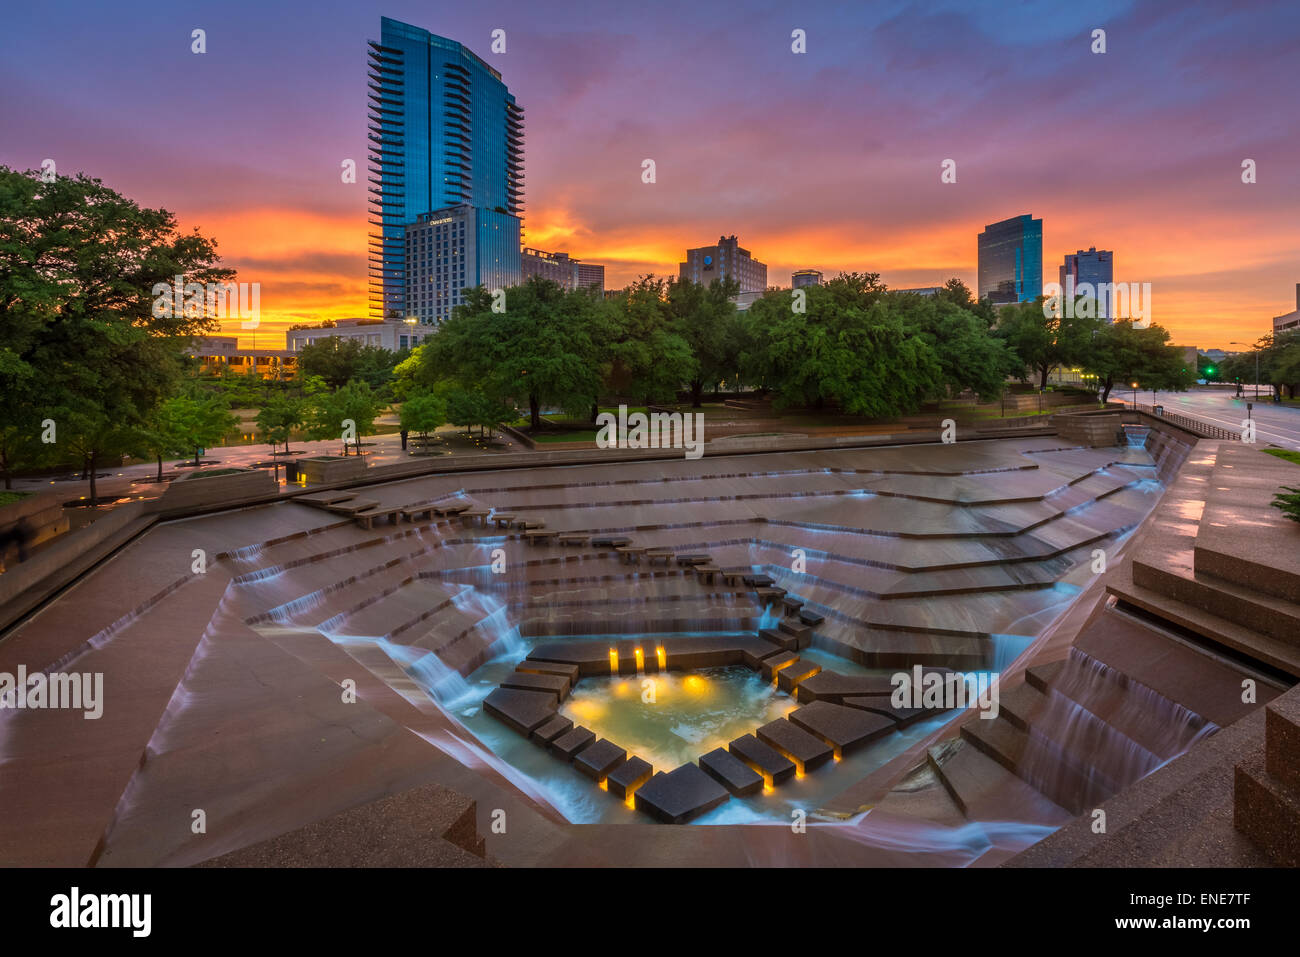 Il Fort Worth giardini d'acqua, costruito nel 1974, è situato sul lato sud del centro di Fort Worth, Texas Foto Stock